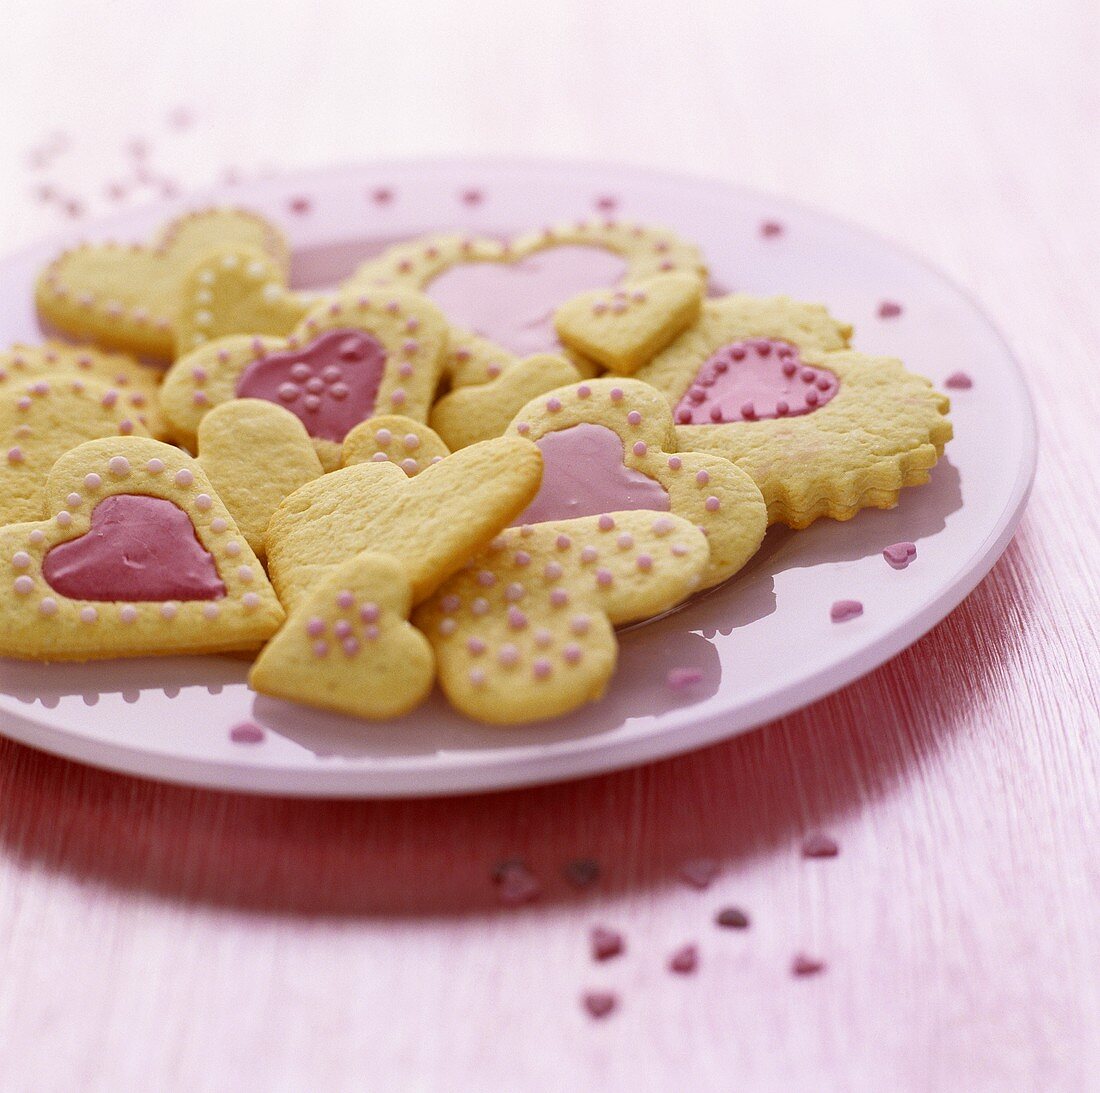 Herzförmige Plätzchen mit rosa Glasur und Zuckerperlen